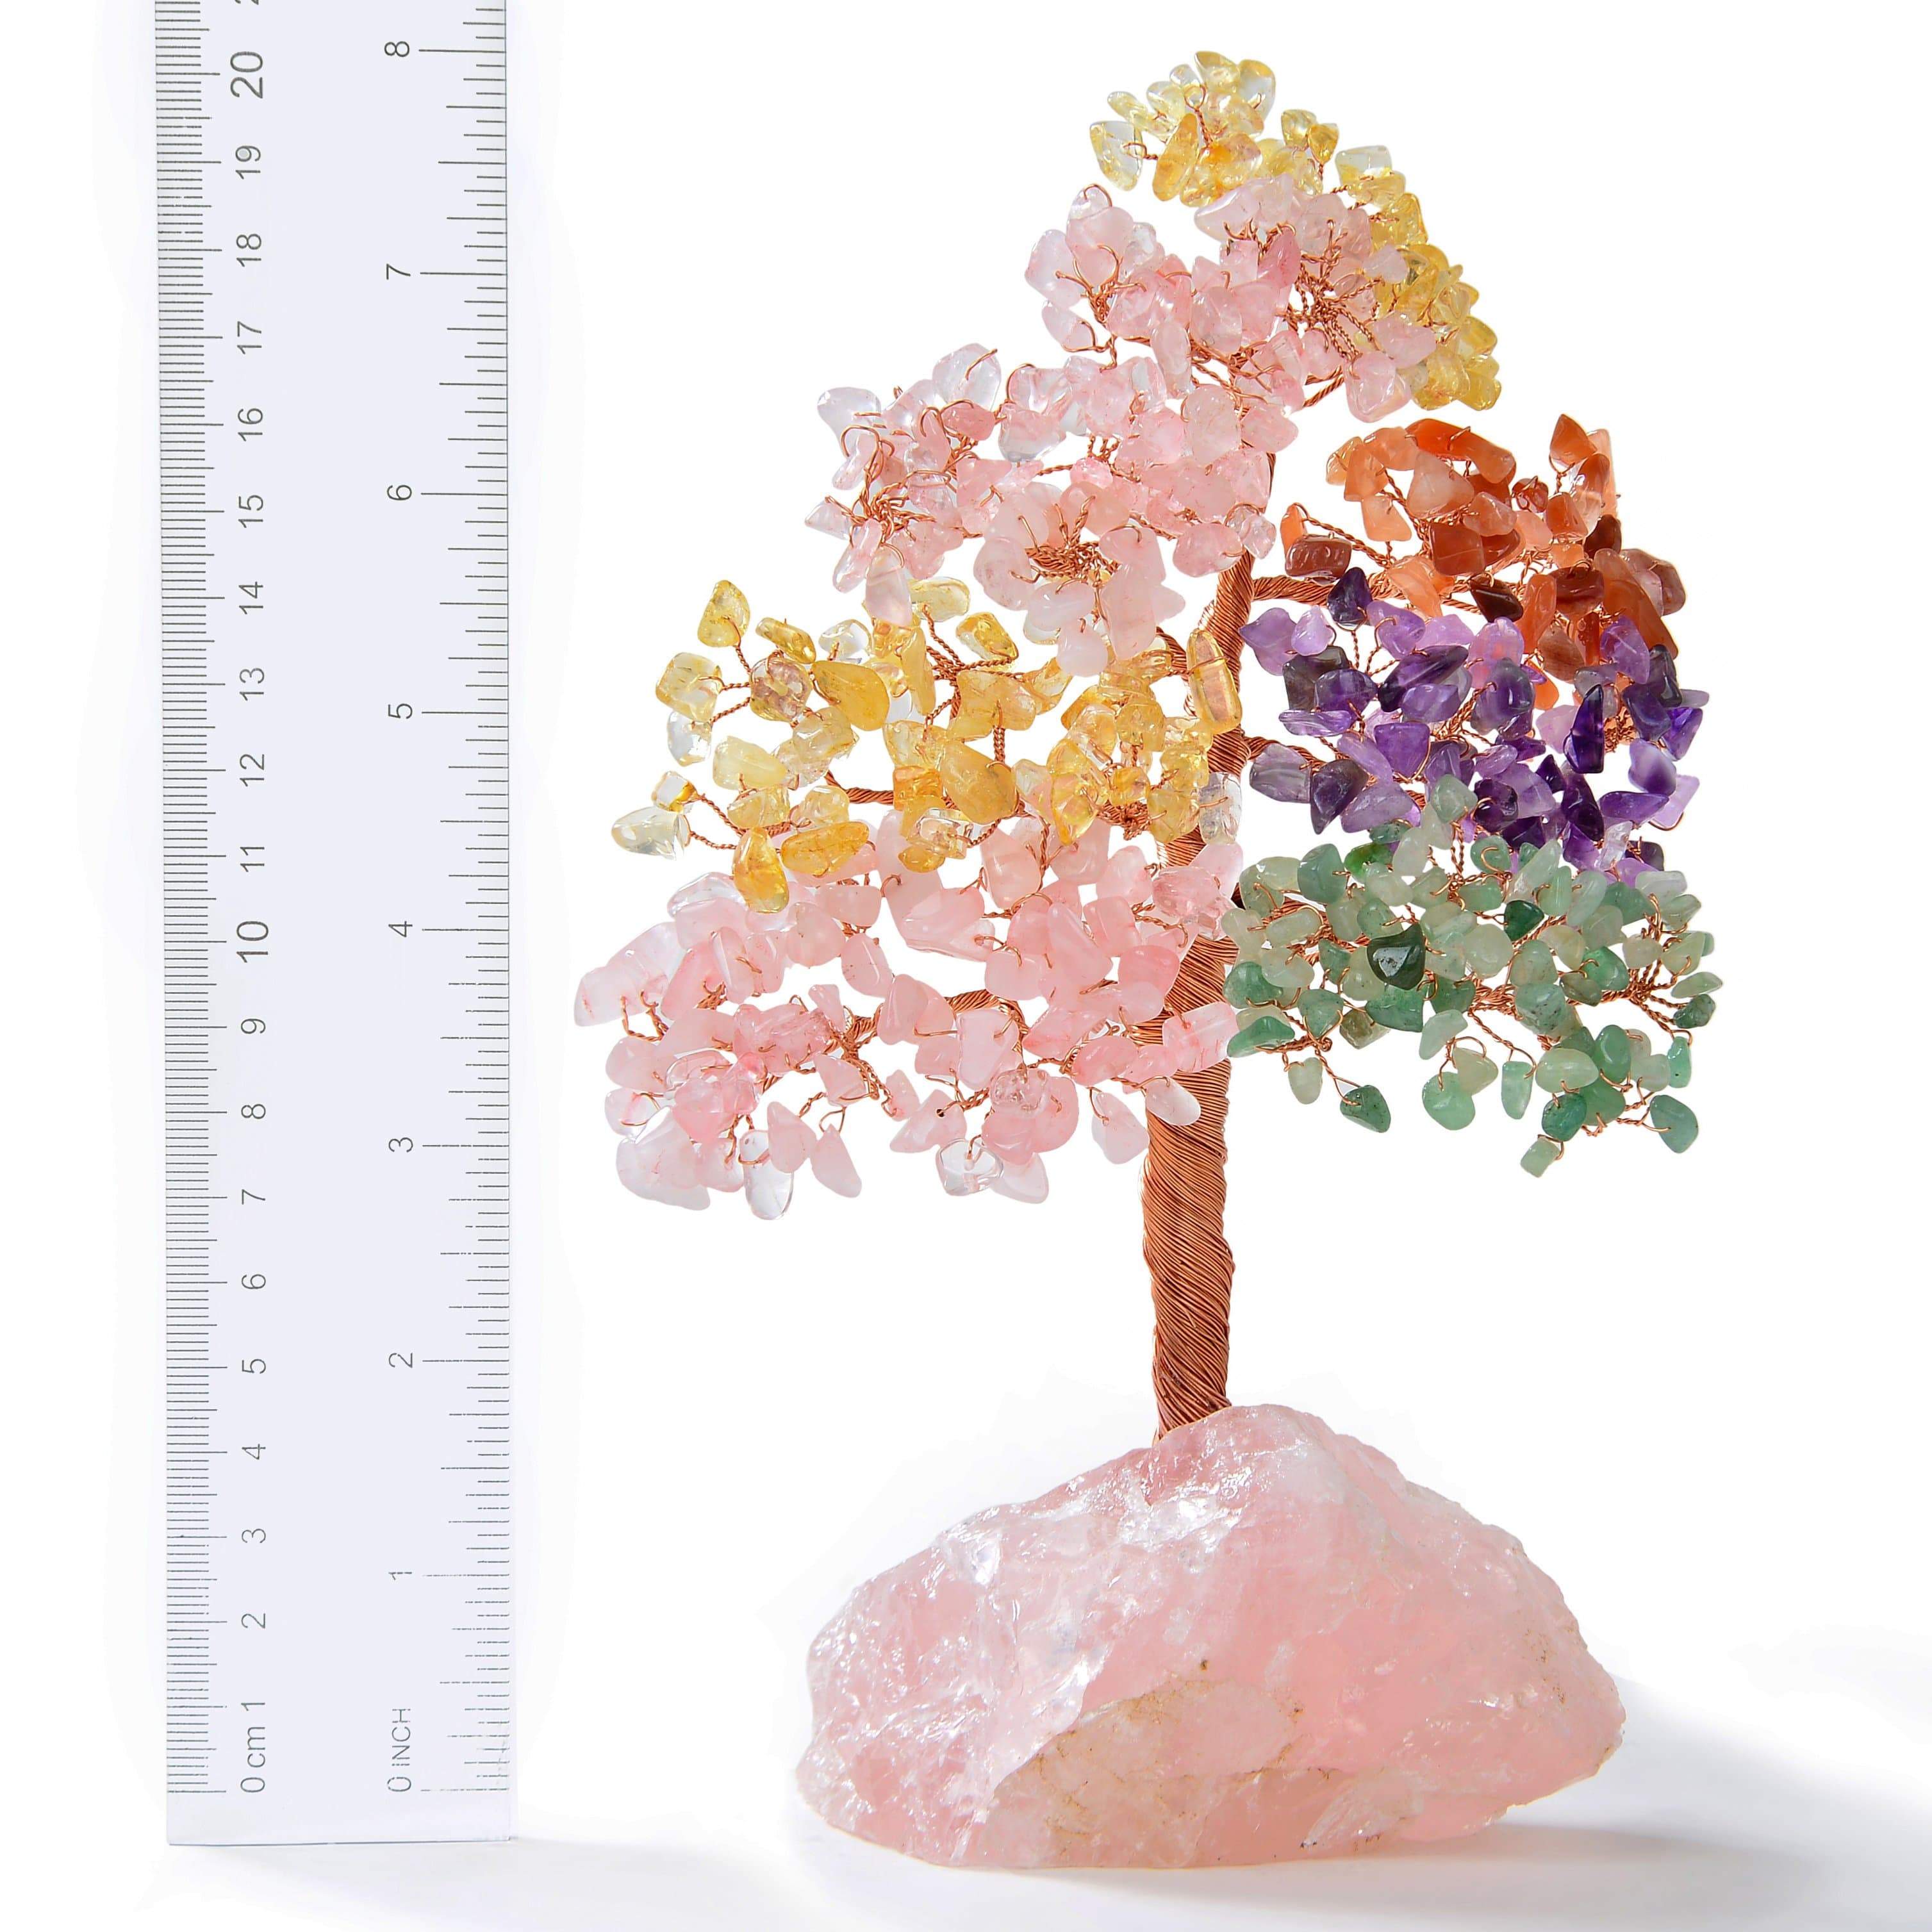 Kalifano Gemstone Trees Multi-Gemstone Tree of Life on Rose Quartz Base with 414 Natural Stones K965R-MT2